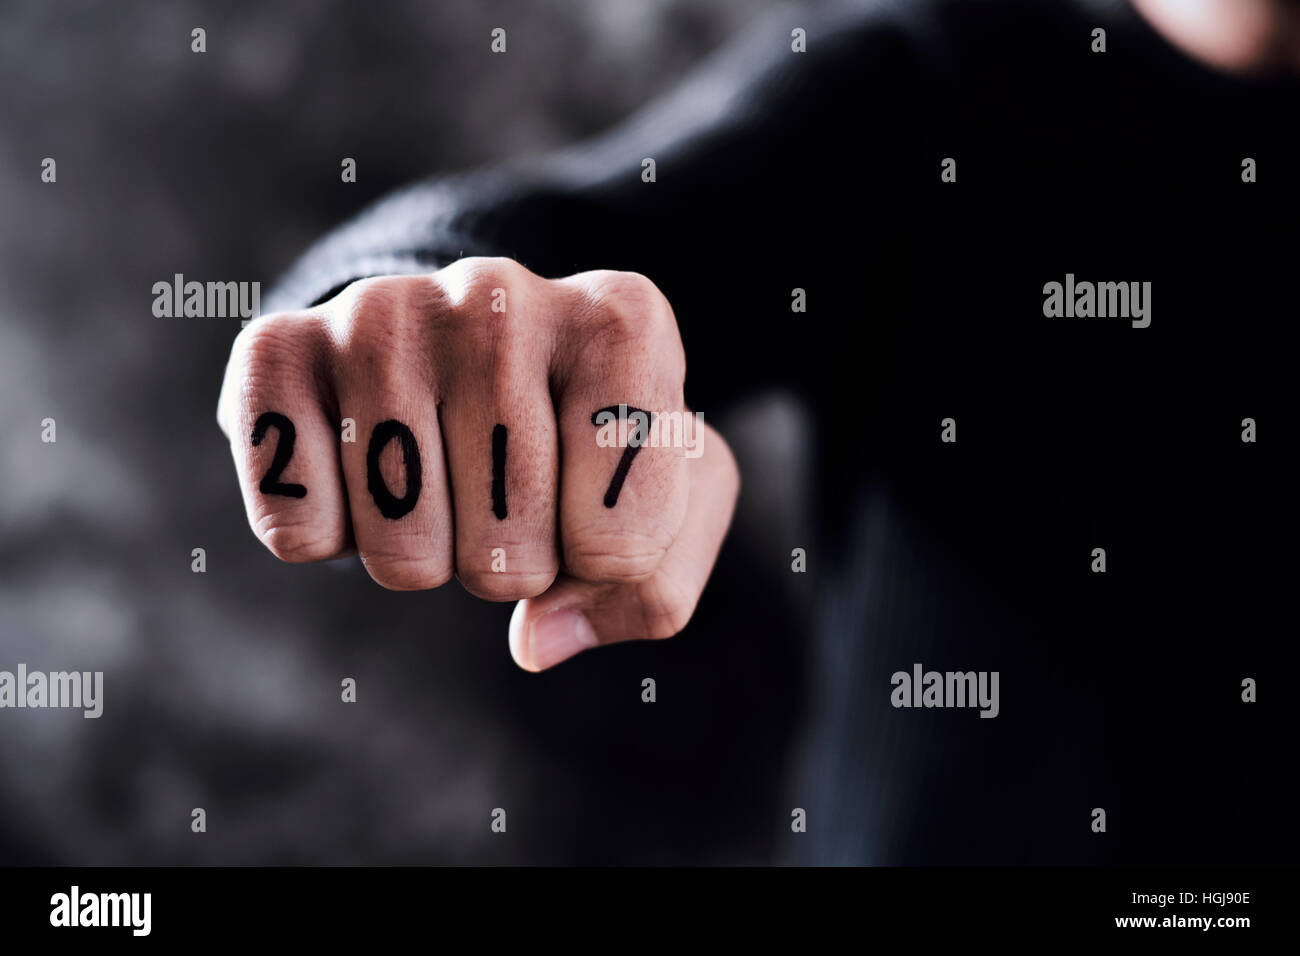 Gros plan de l'poing d'un jeune homme avec le numéro 2017, comme la nouvelle année, écrit dans ses doigts Banque D'Images